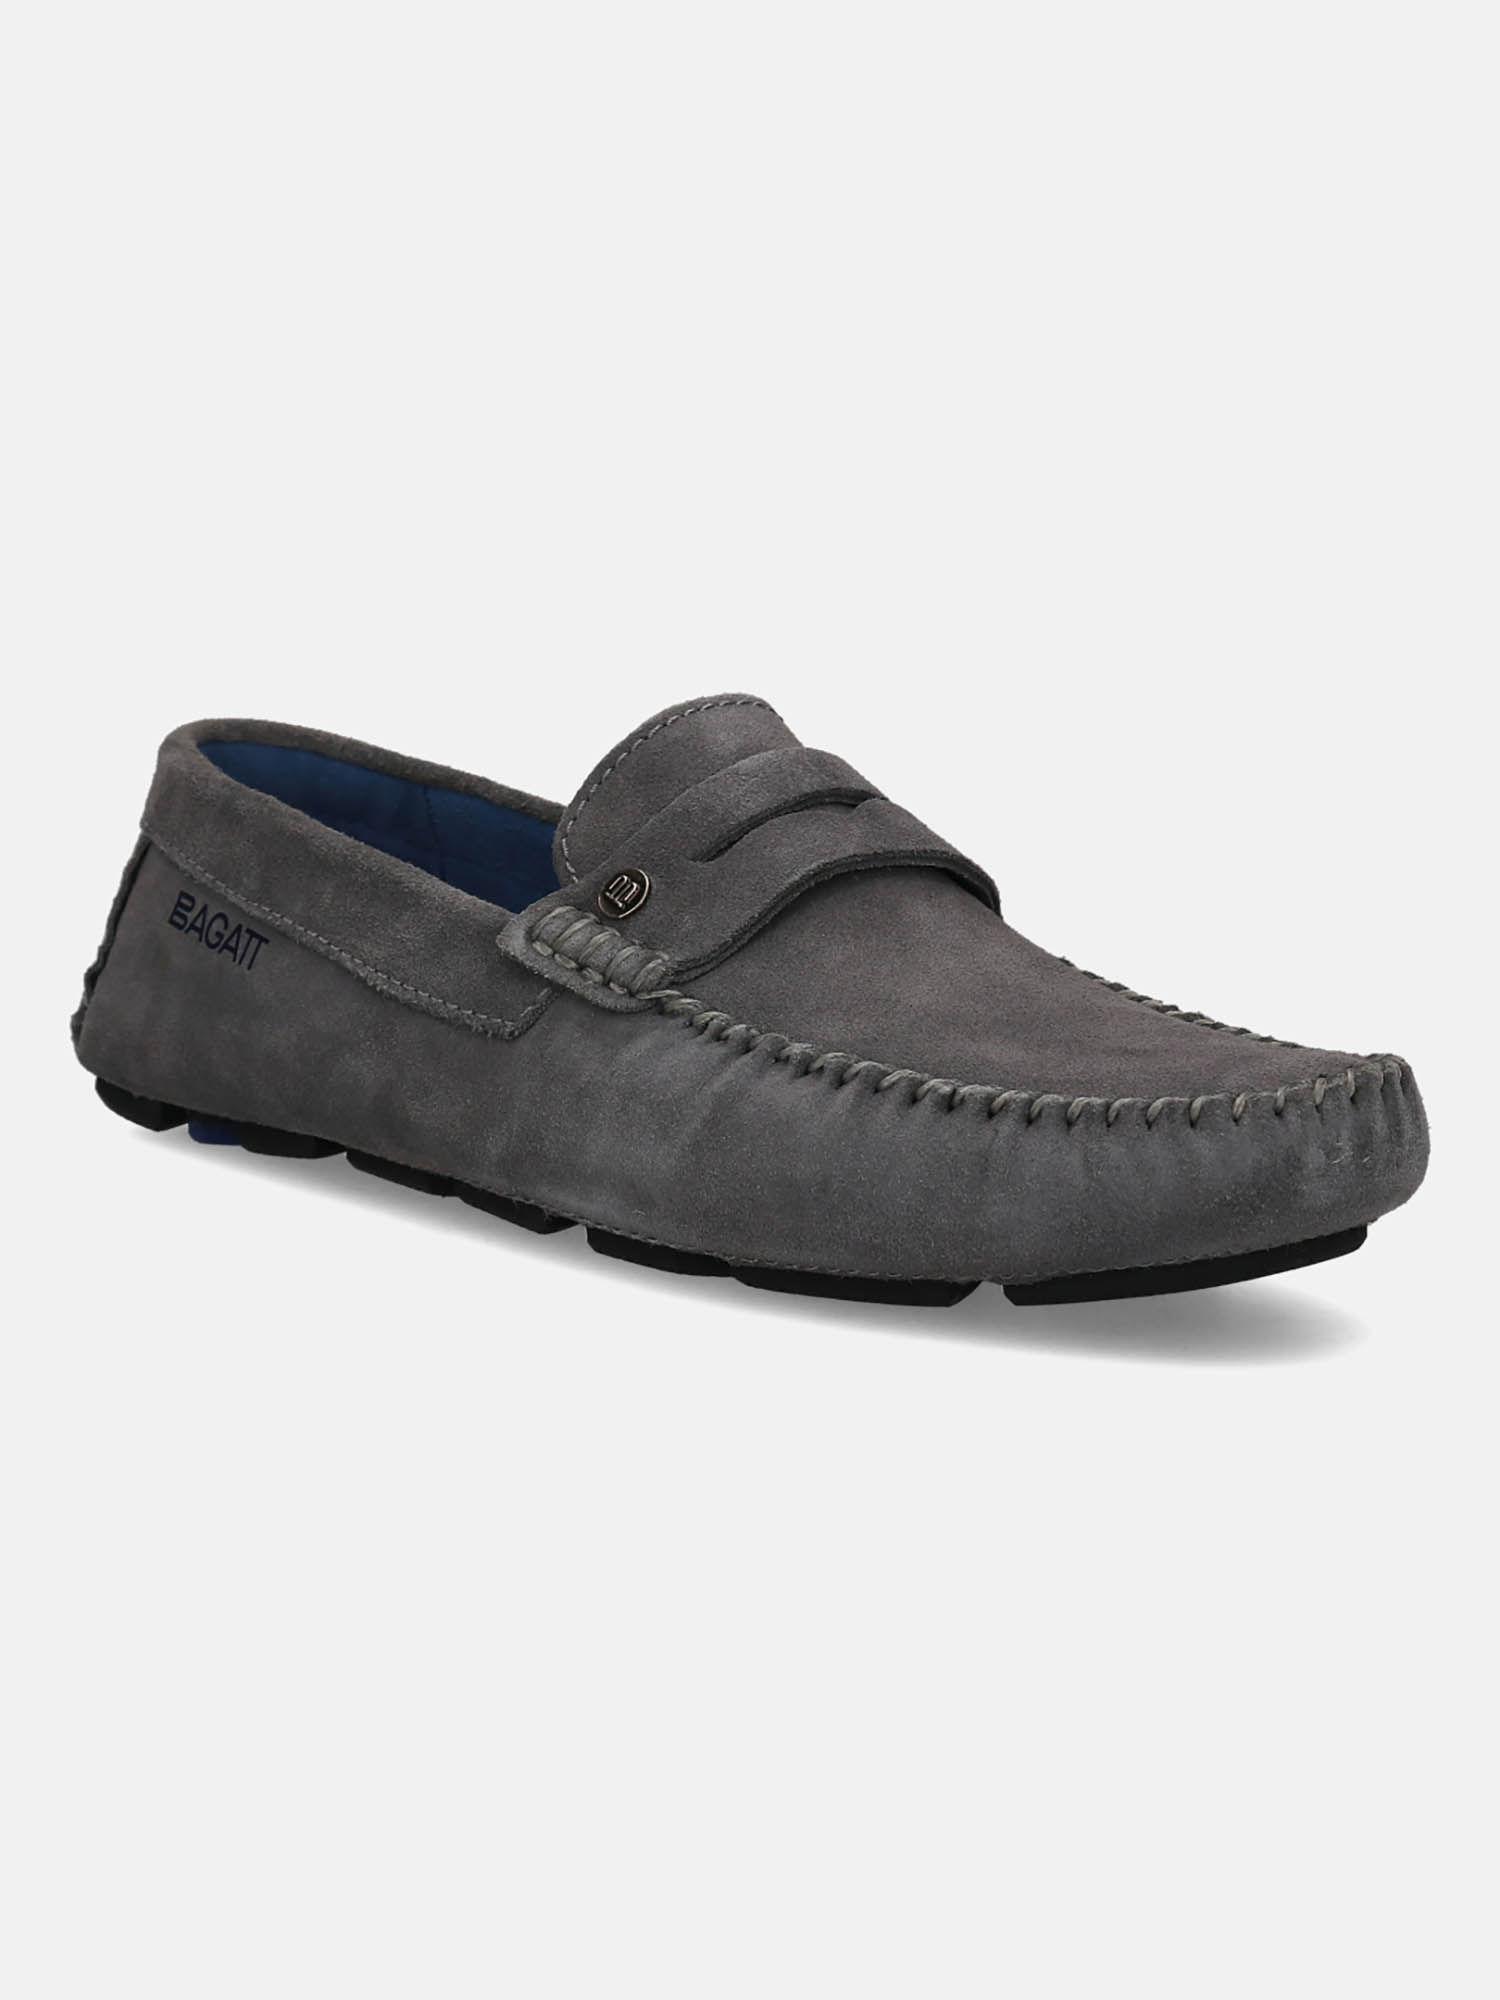 hexa men grey suede casual loafers slip-on